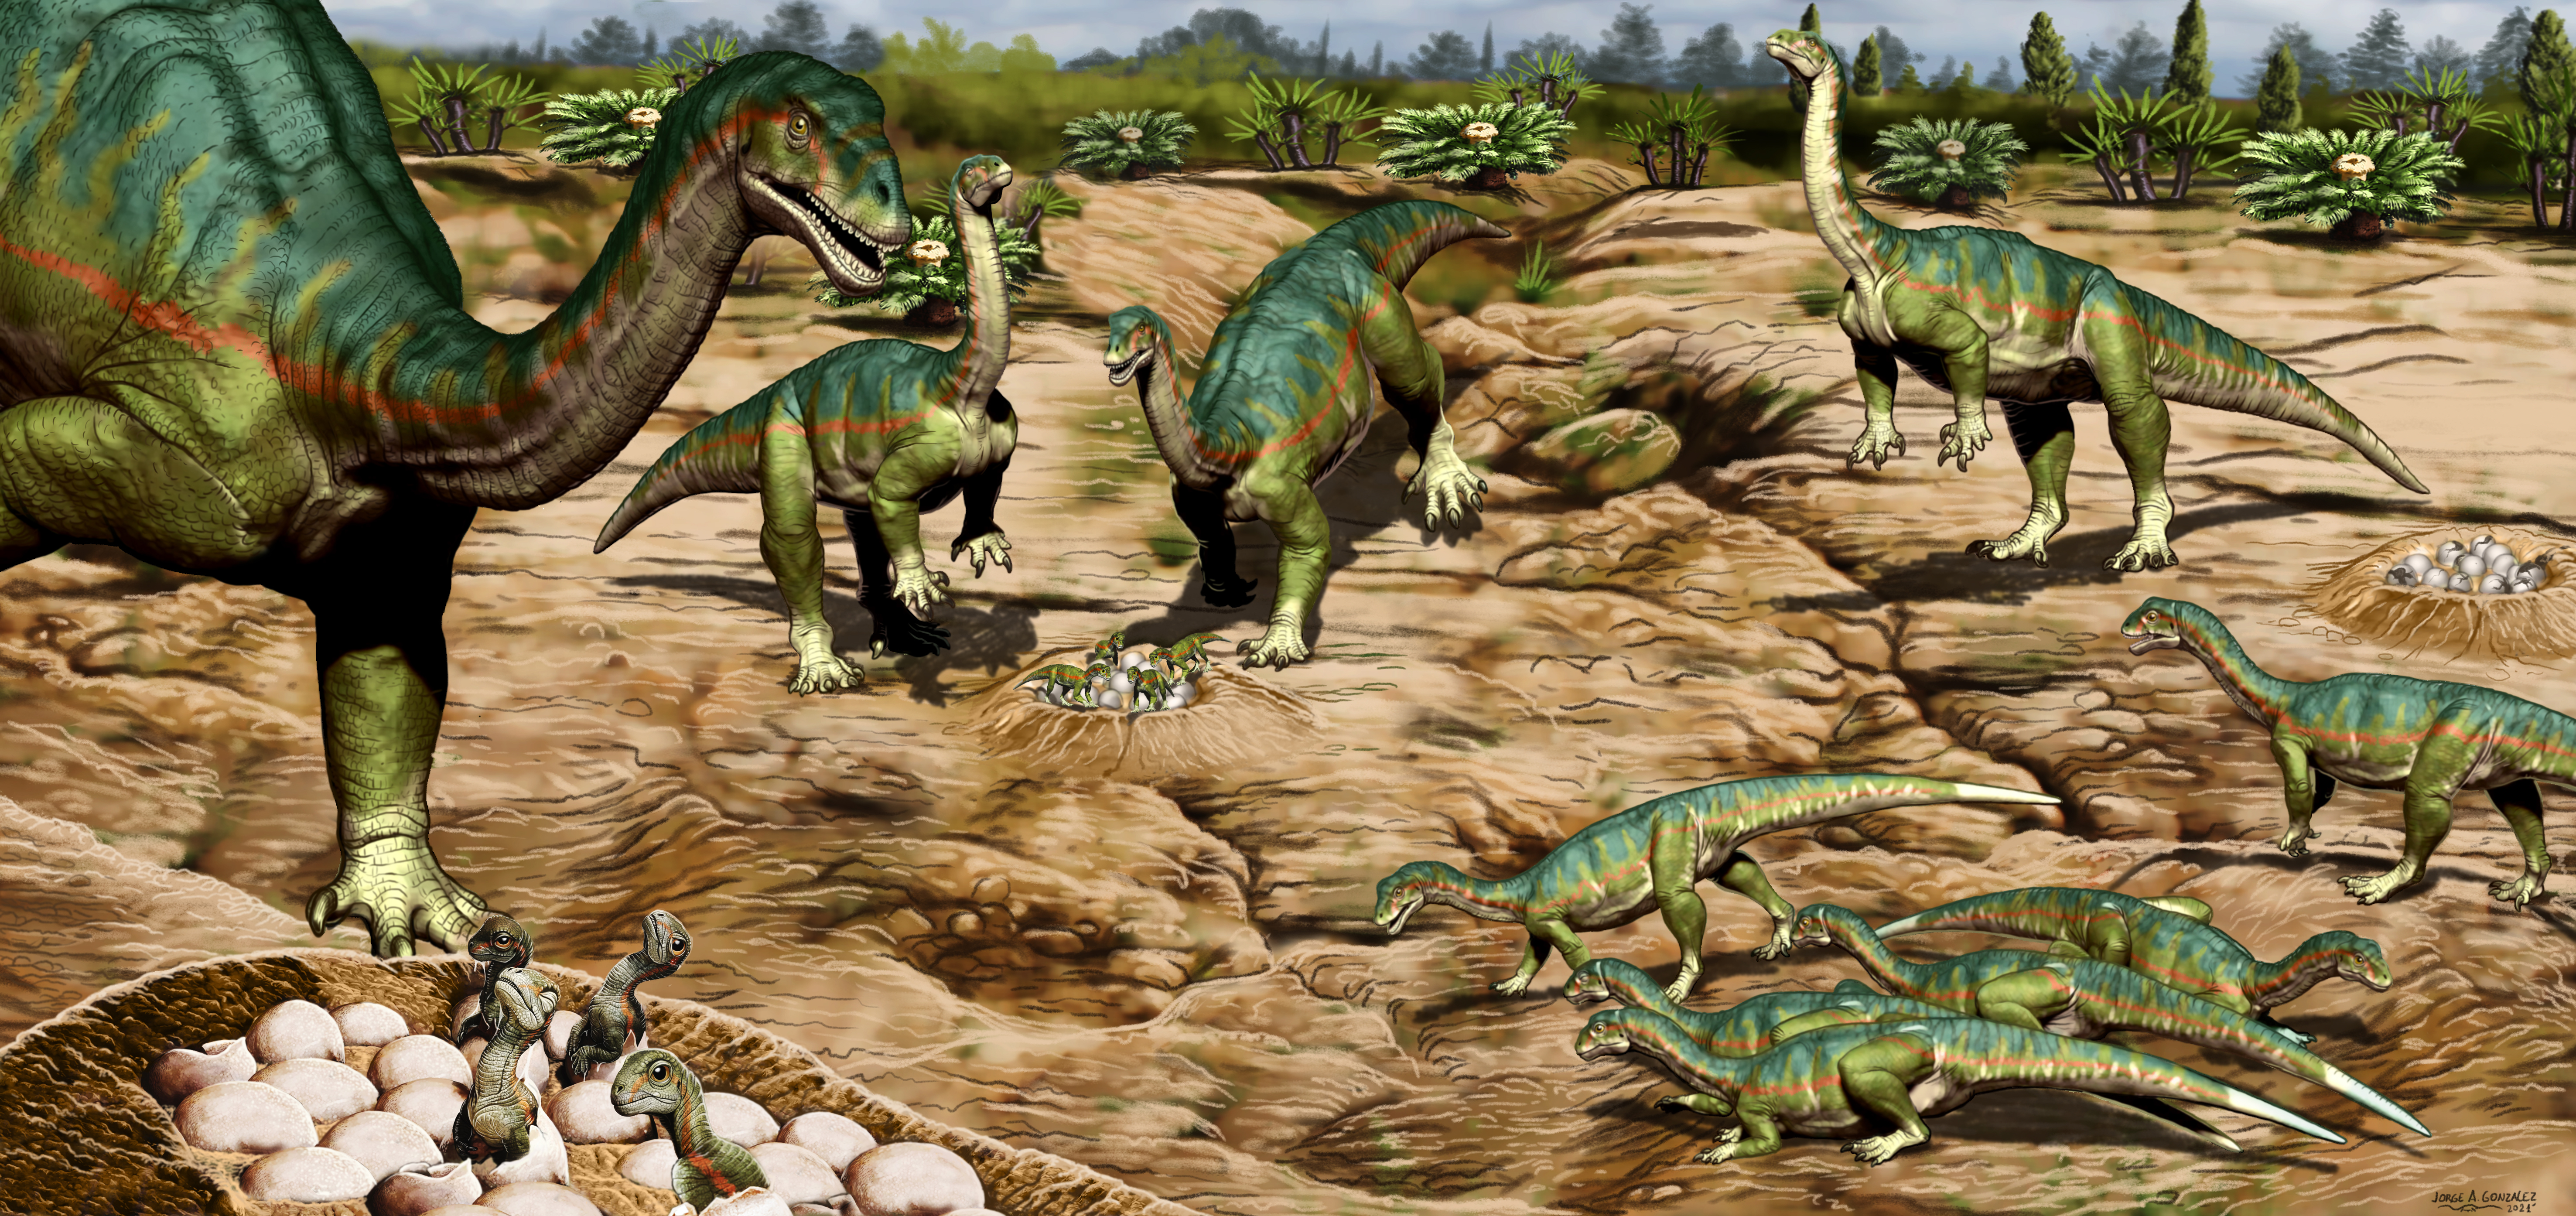 Así eran los primeros dinosaurios que habitaban en el actual territorio de Santa Cruz, Argentina que se movían en manada (Ilustración de Jorge González)